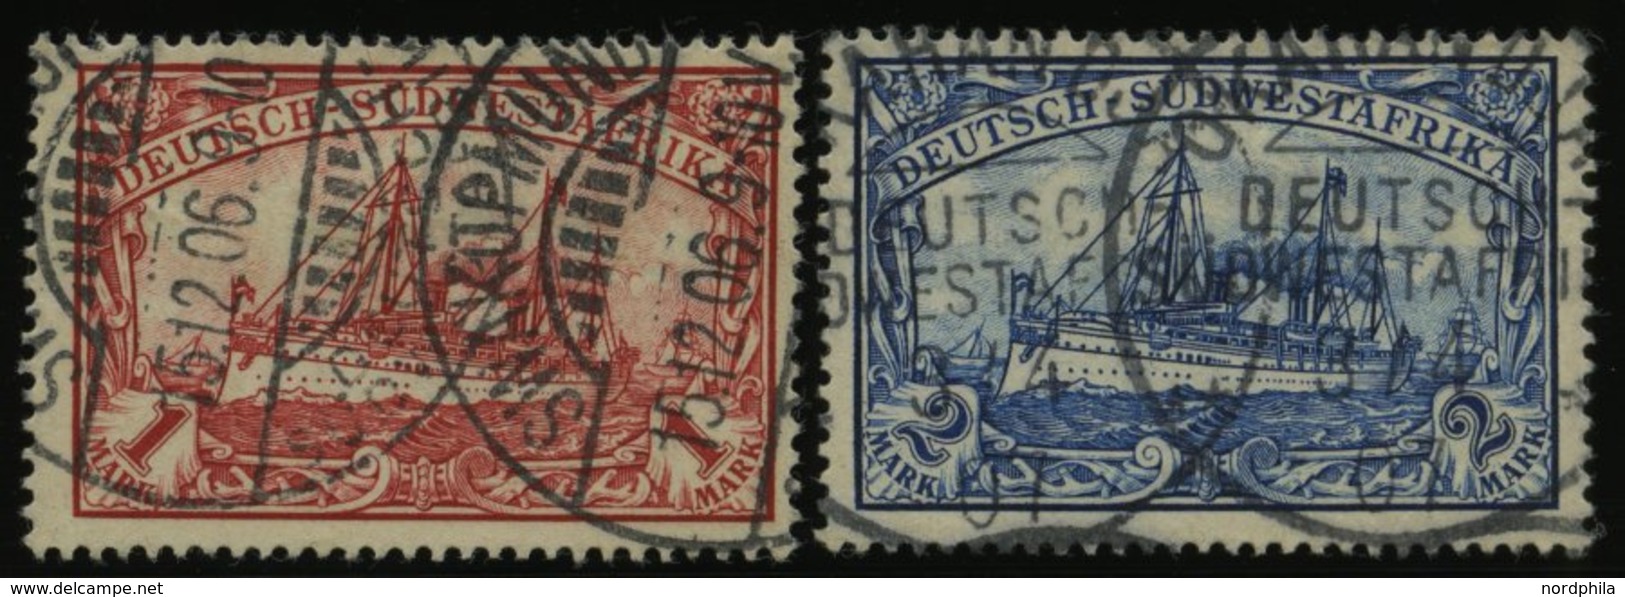 DSWA 20/1 O, 1901, 1 M. Rot Und 2 M. Schwärzlichblau, Ohne Wz., 2 Prachtwerte, Mi. 83.- - German South West Africa